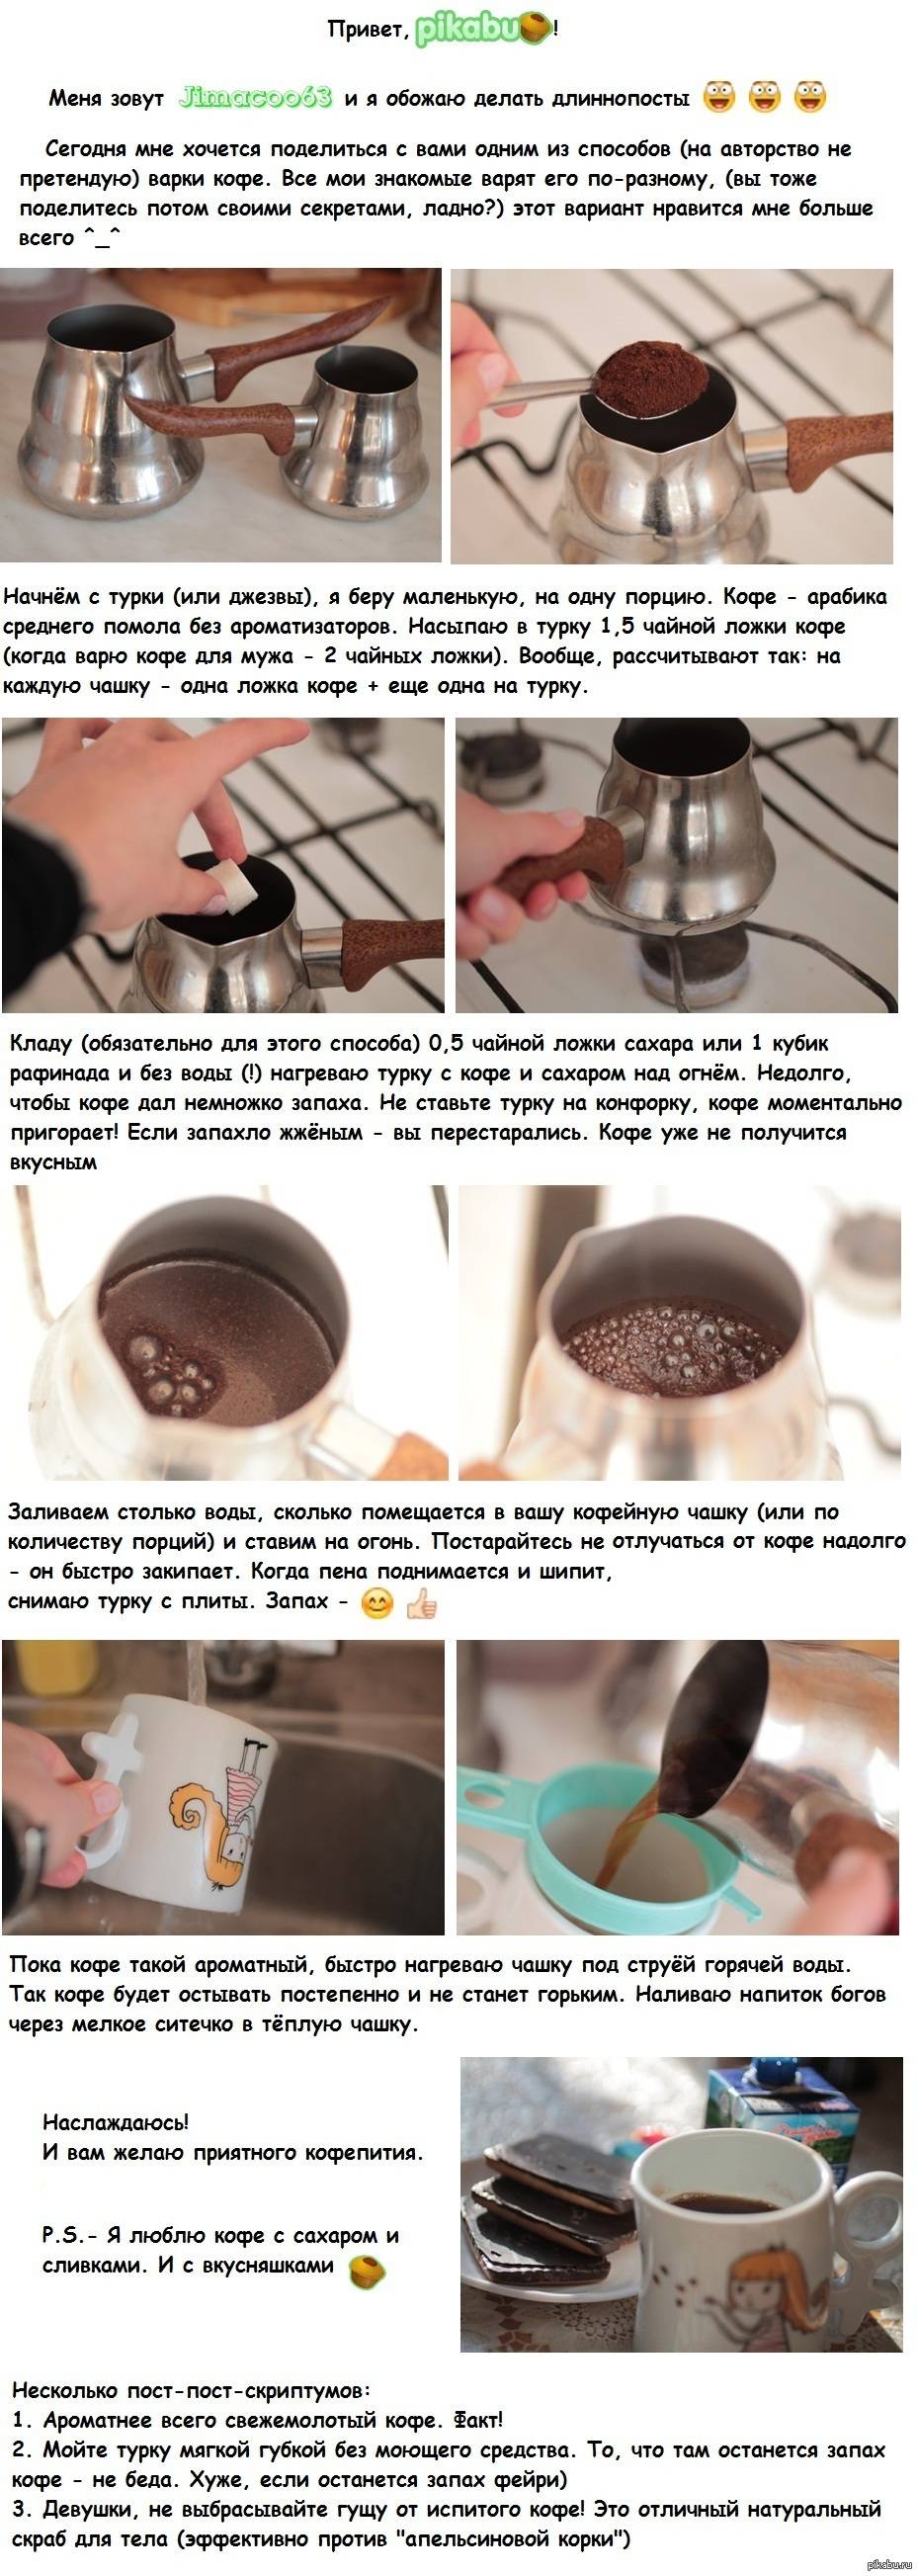 Как сварить кофе в микроволновке?